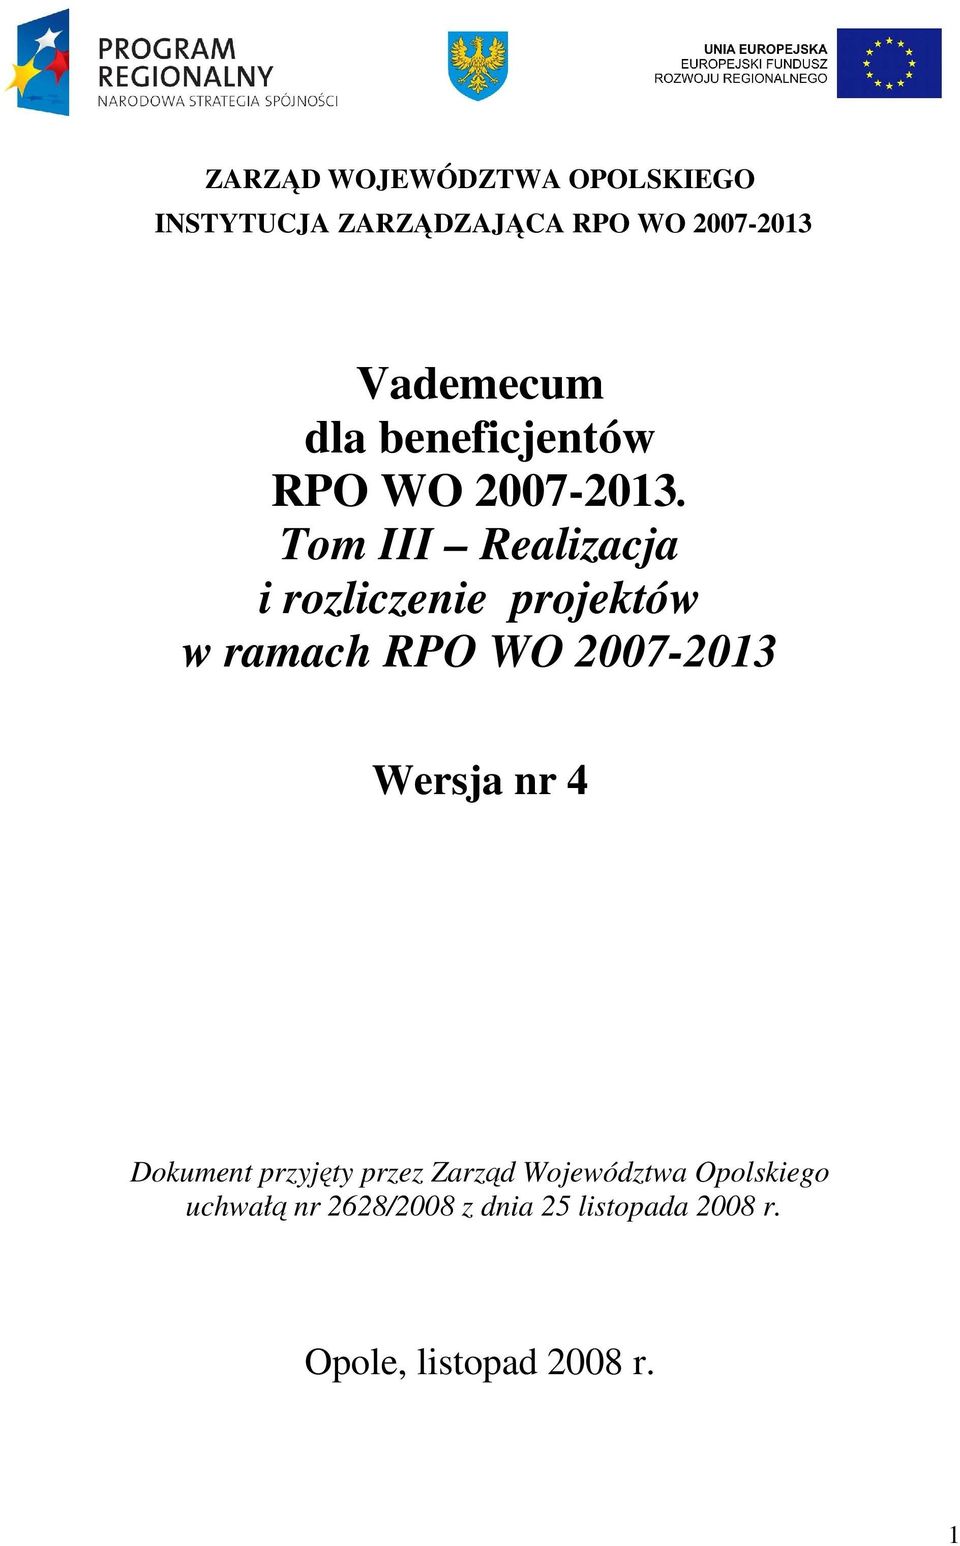 Tom III Realizacja i rozliczenie projektów w ramach RPO WO 2007-2013